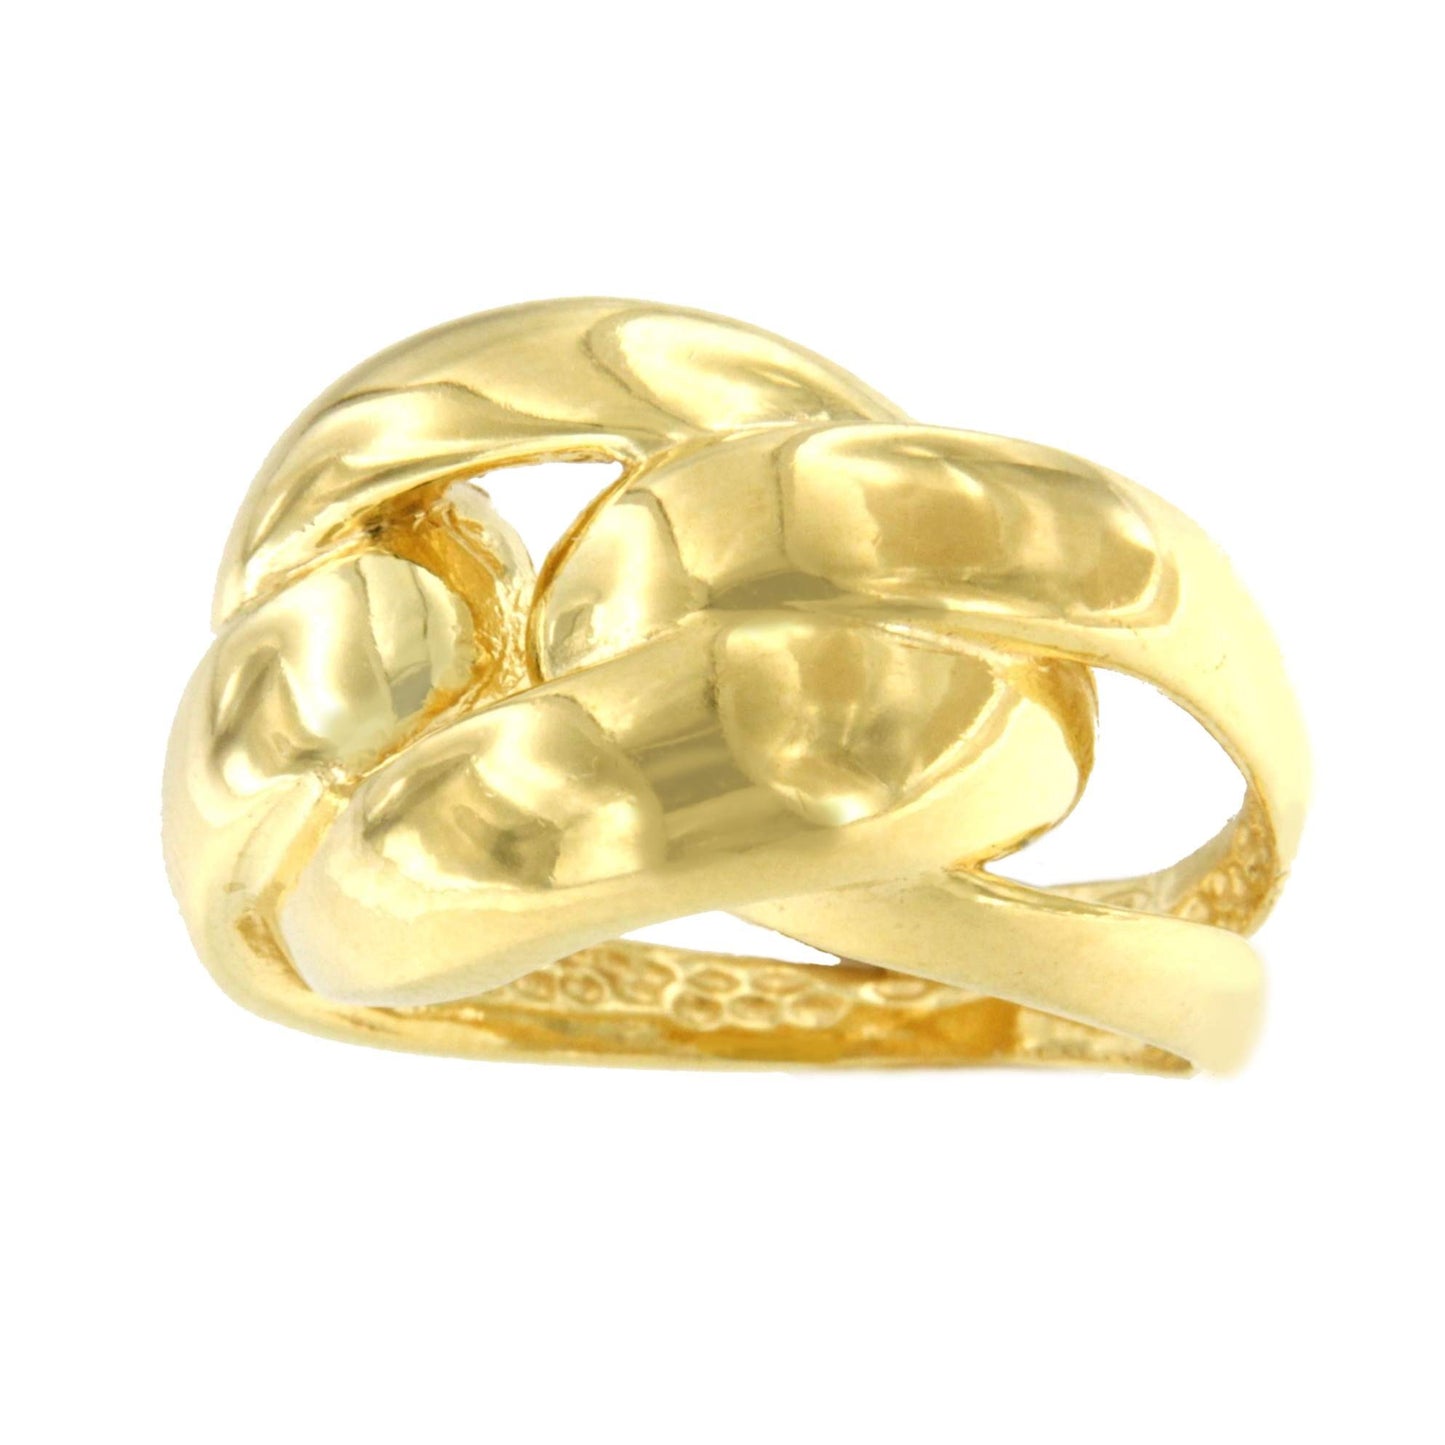 RINALDO anillo ancho barbado pulido en plata 1ª ley bañada oro